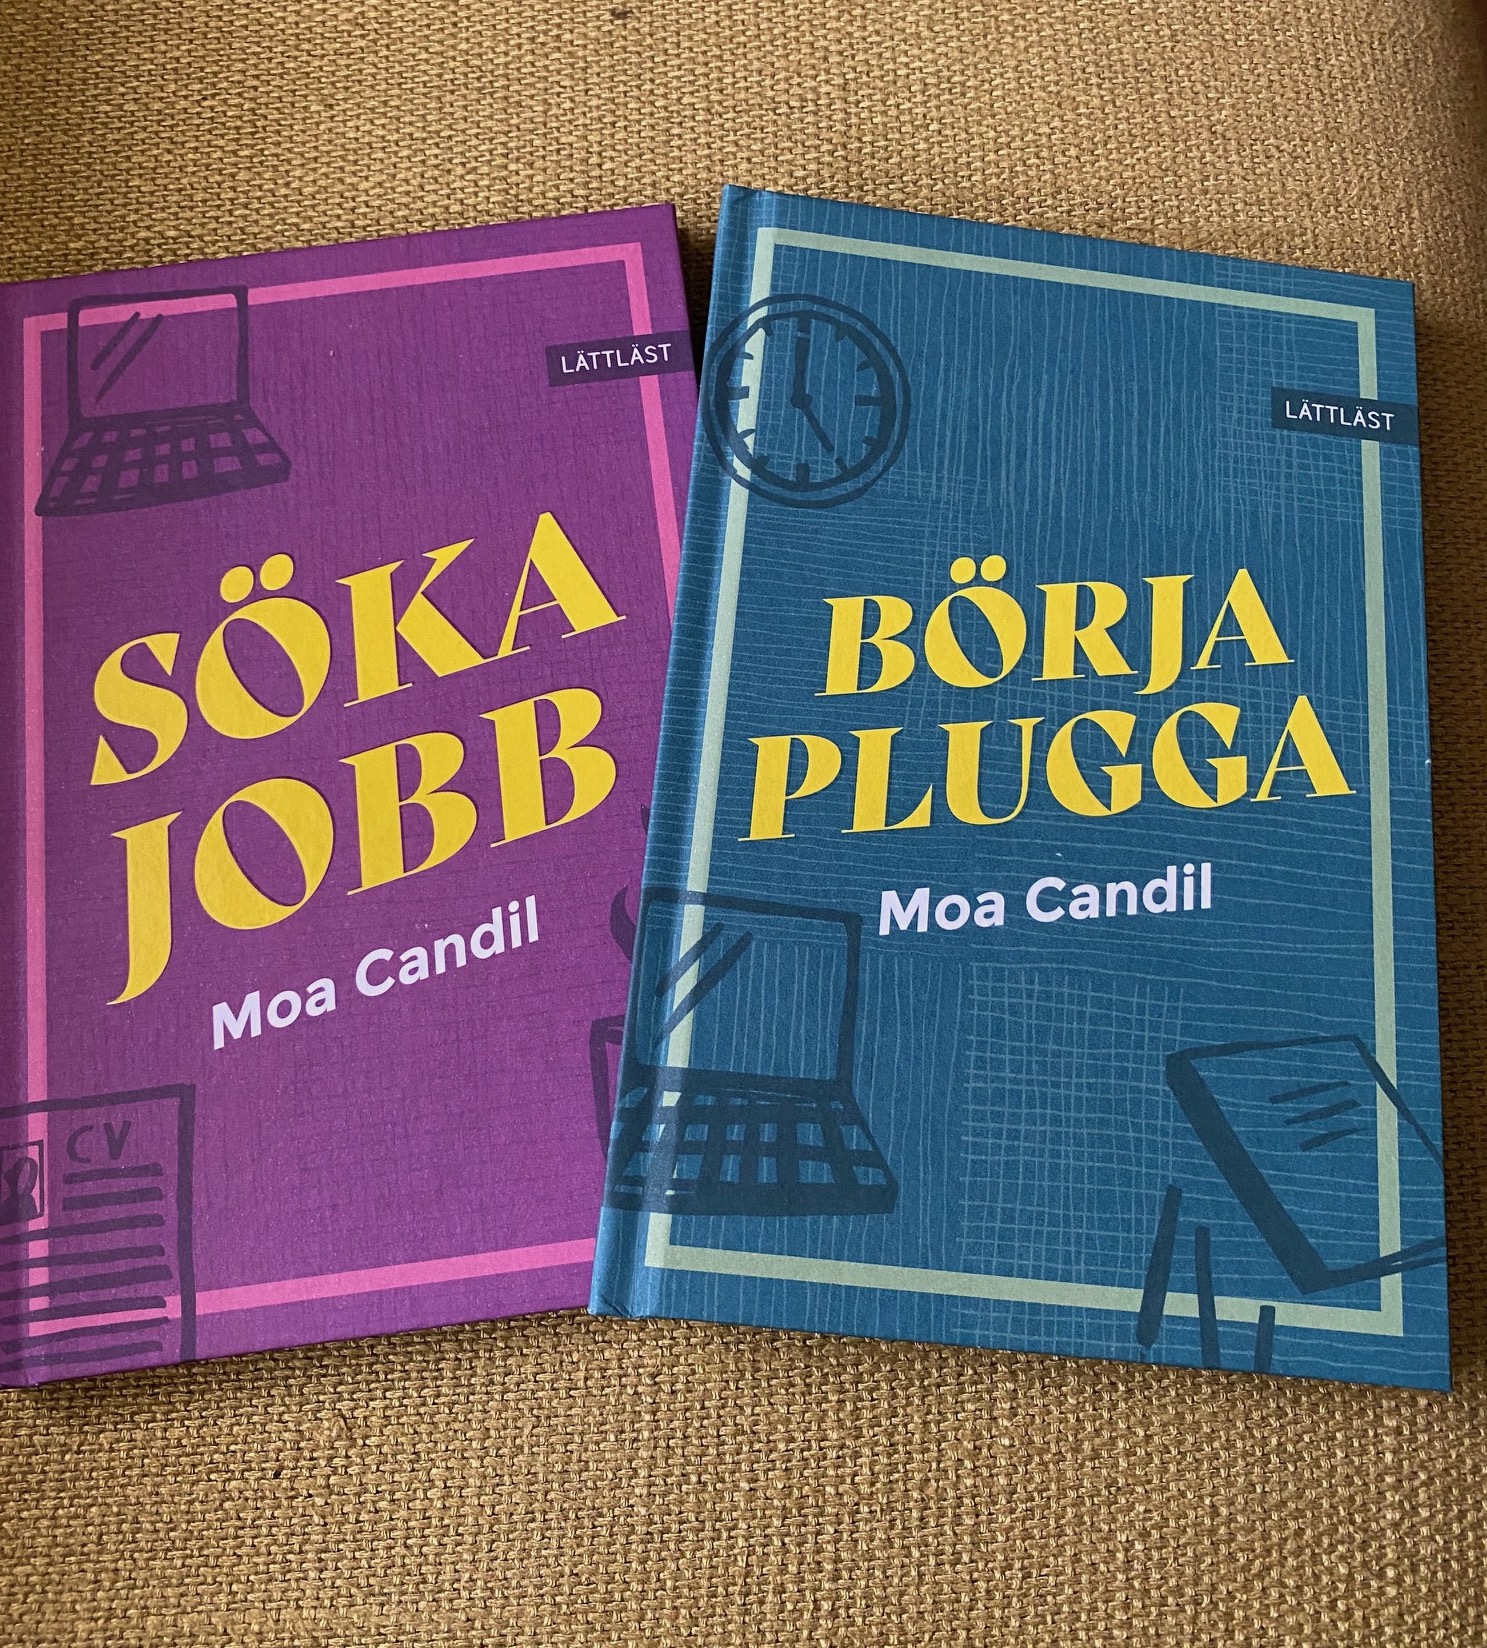 Boken Söka jobb är lila med gul text och boken Börja plugga är blå med gul text